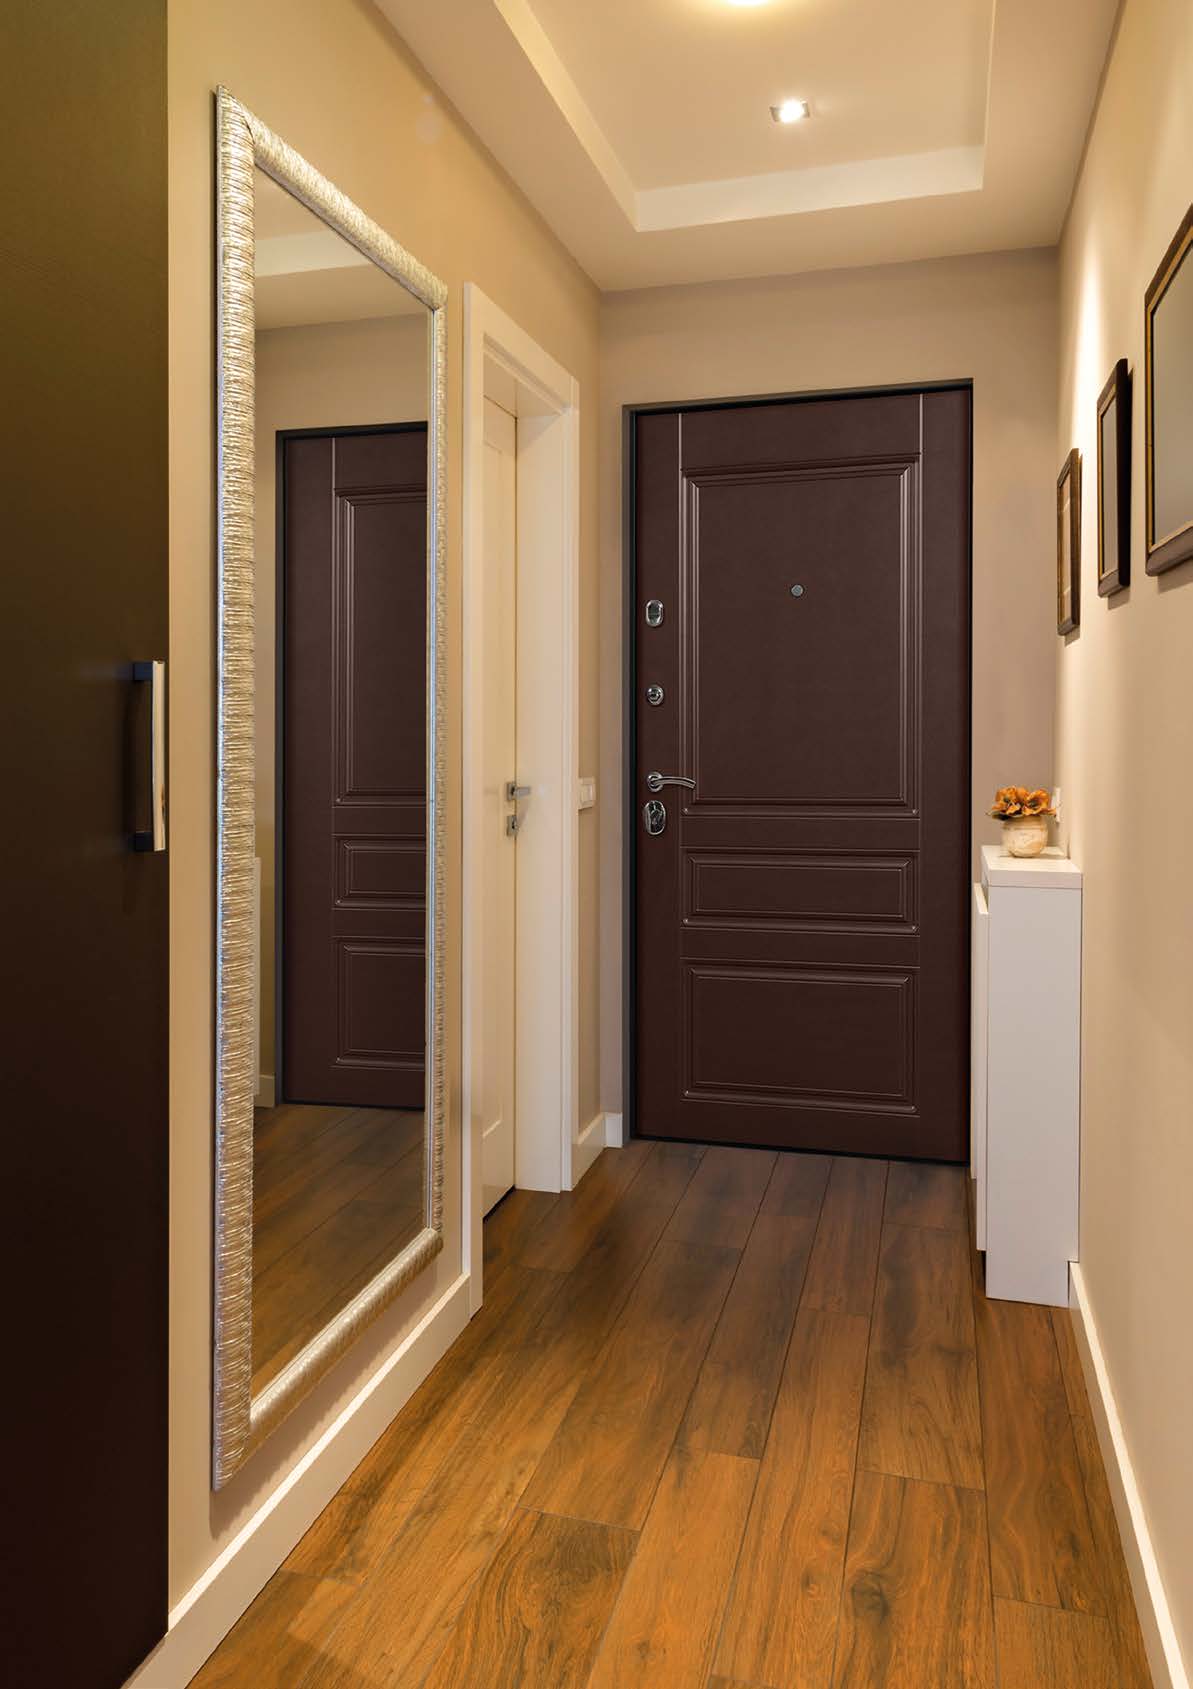 Светлые двери в интерьере квартиры: реальные фото с дизайном комнат, преимущества и недостатки